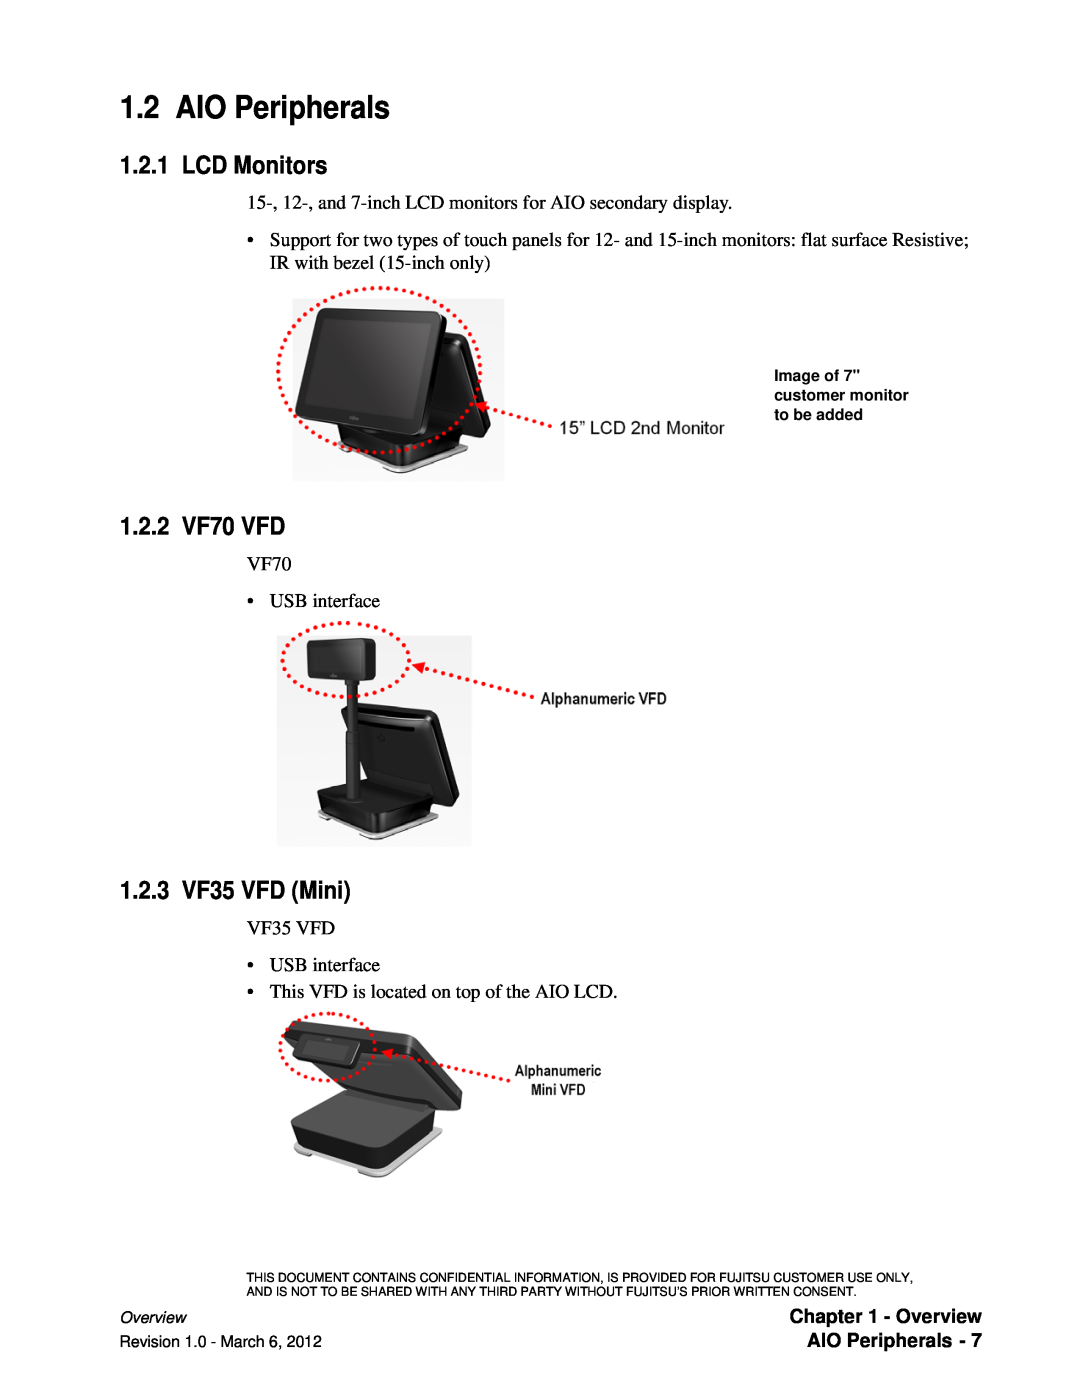 Fujitsu 7000 manual AIO Peripherals, LCD Monitors, 1.2.2 VF70 VFD, 1.2.3 VF35 VFD Mini 